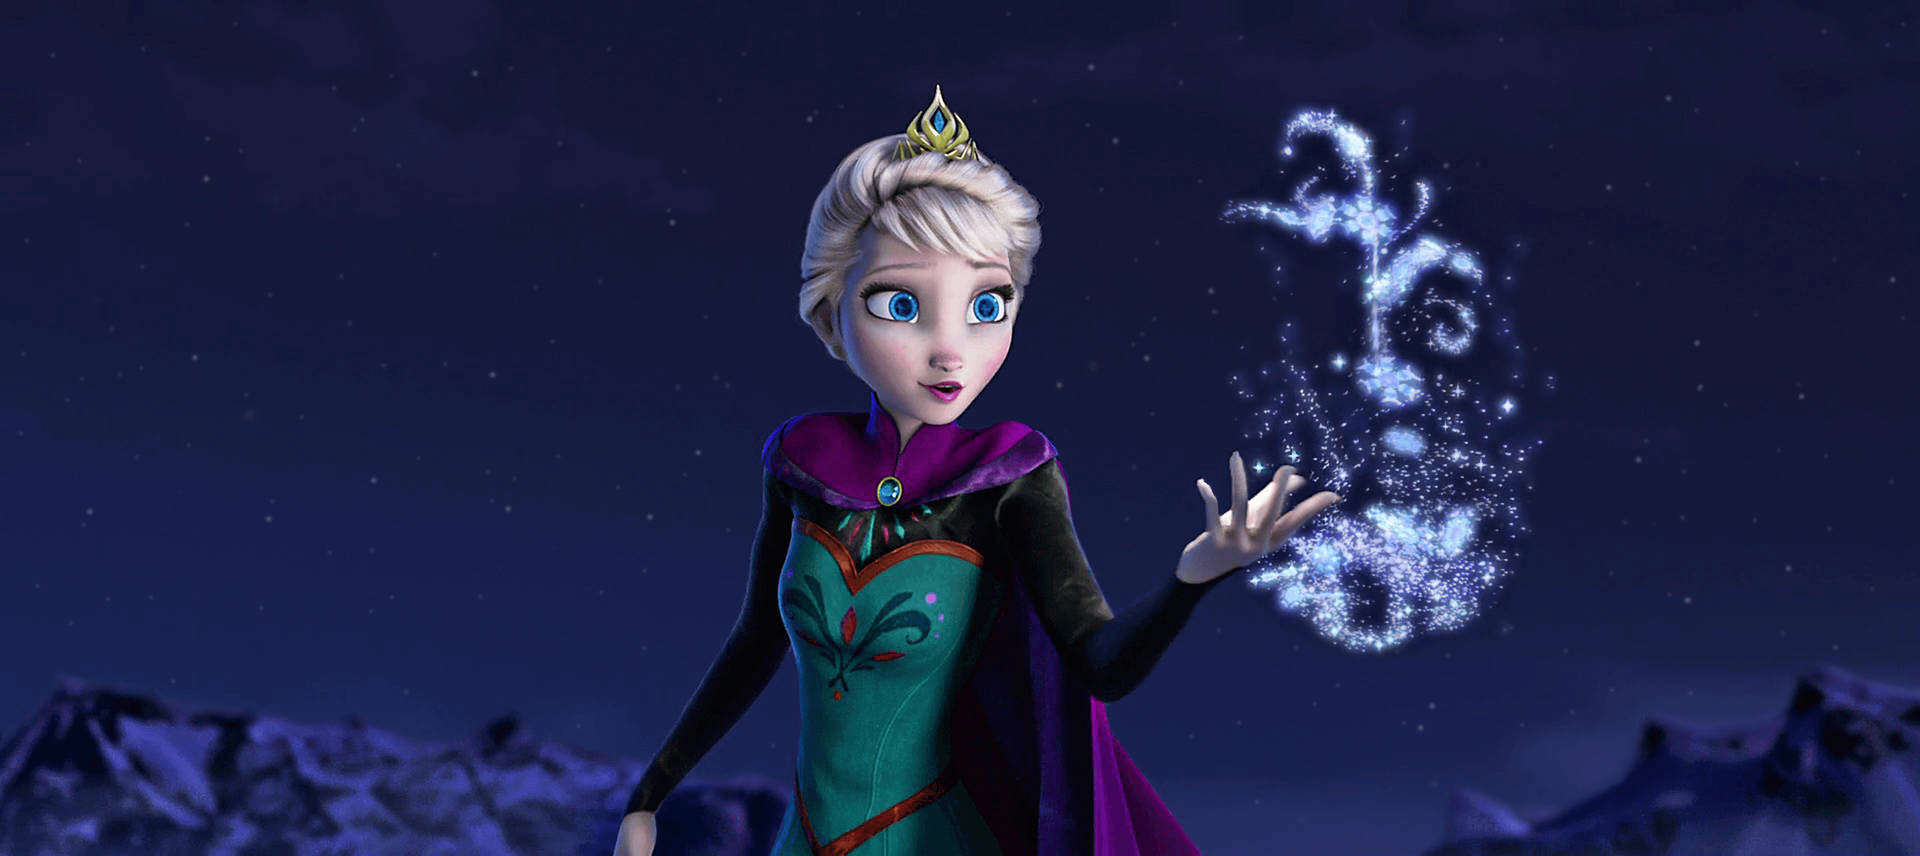 Elsa's Ice Powers Background